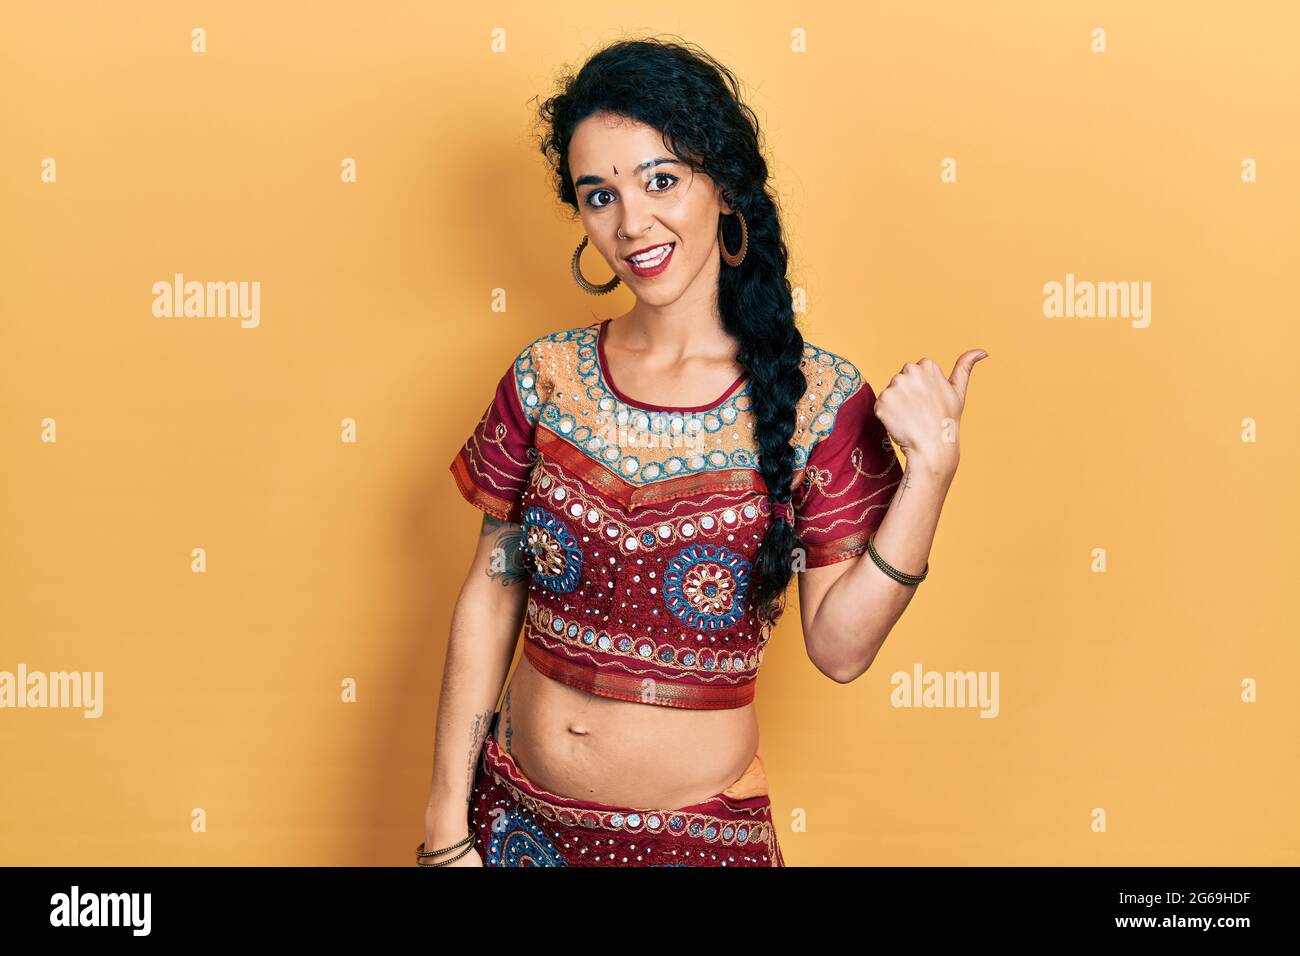 Junge Frau in Bindi- und bollywood-Kleidung, lächelnd, mit glücklichem Gesicht und mit dem Daumen nach oben zur Seite zeigend. Stockfoto